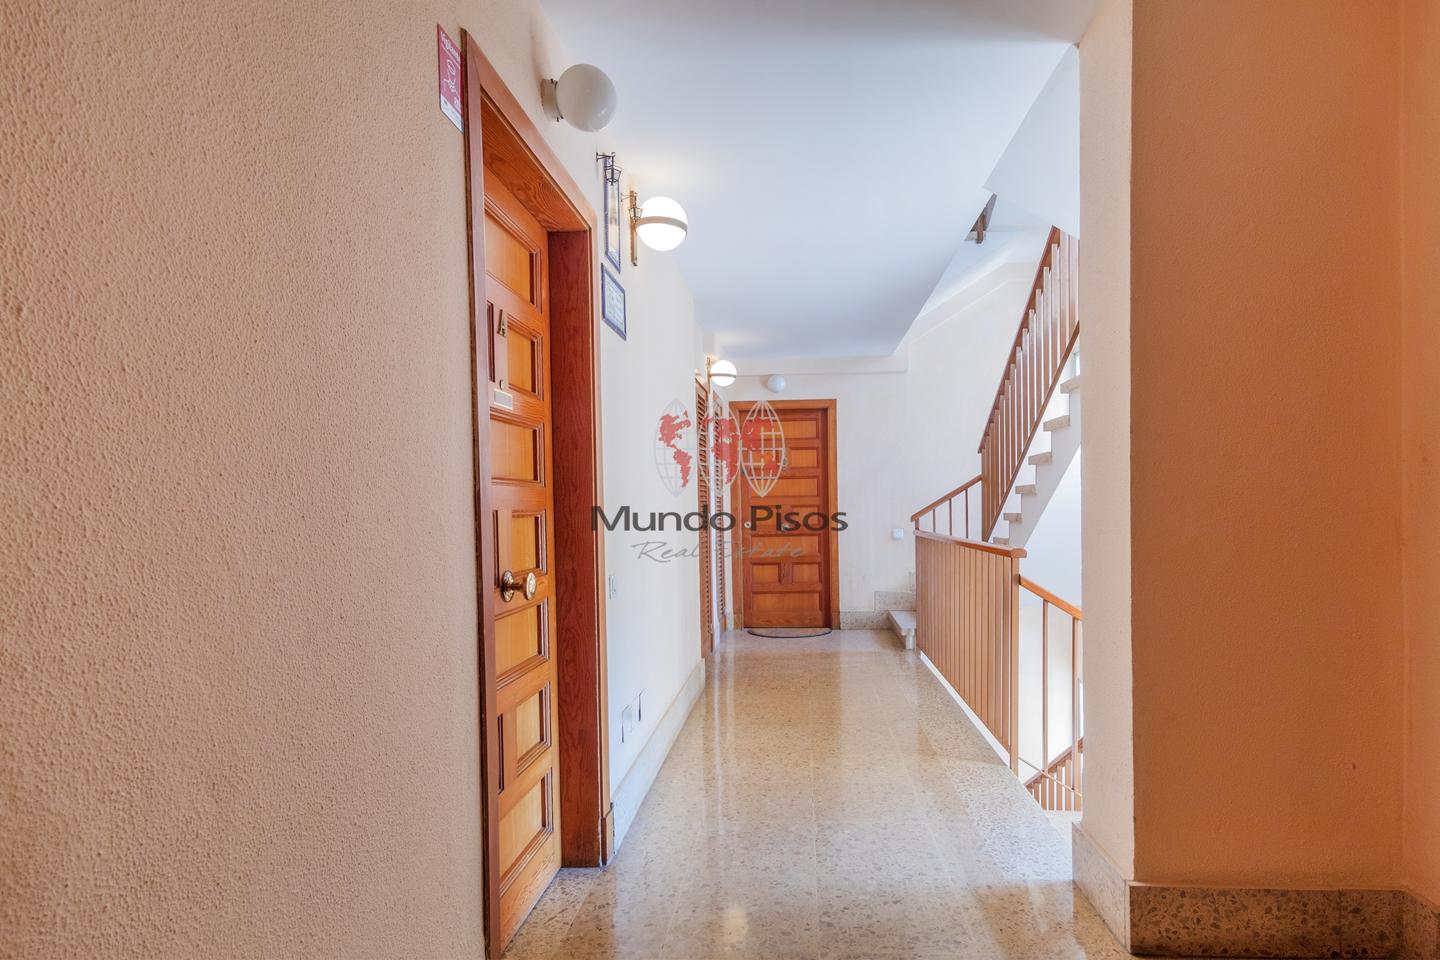 Third-floor apartment in Polígono de Levante, Palma de Mallorca, Balearic Islands